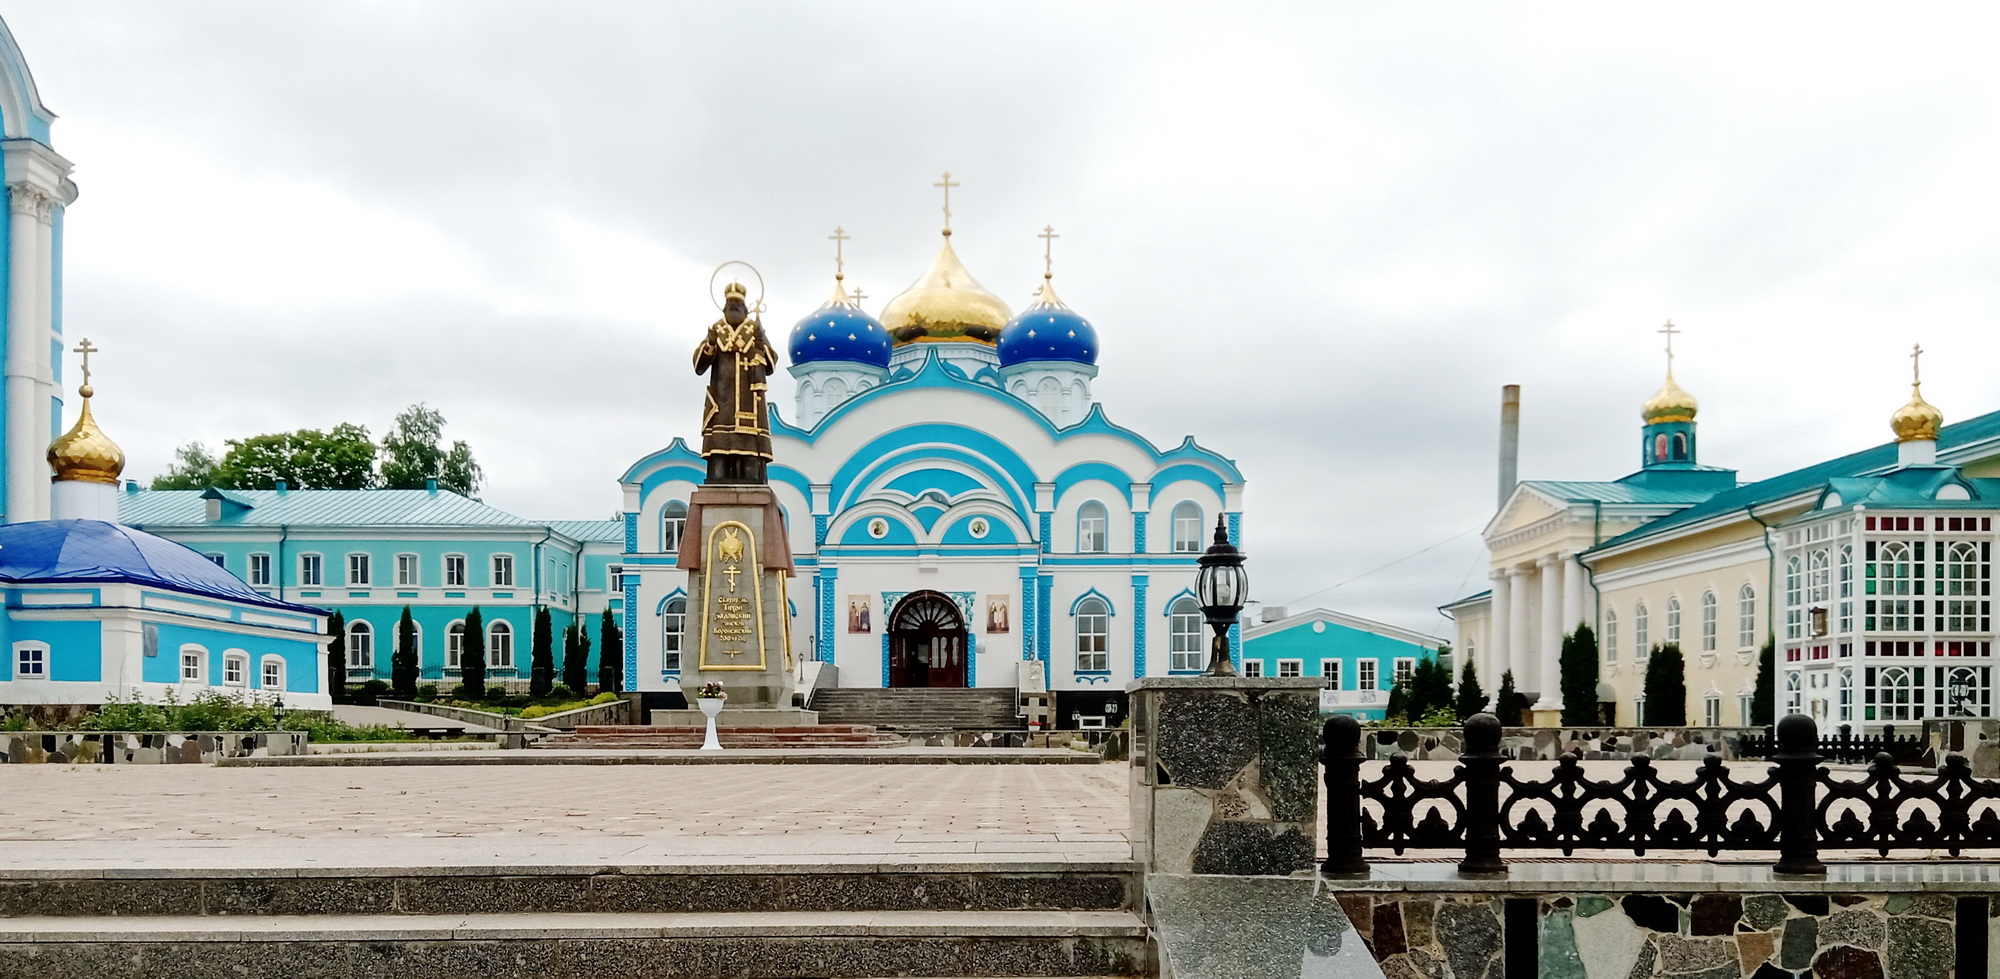 Паломничество по святым местам России: впечатления Татьяны Лукашевич. Часть 3 (+ Фото)